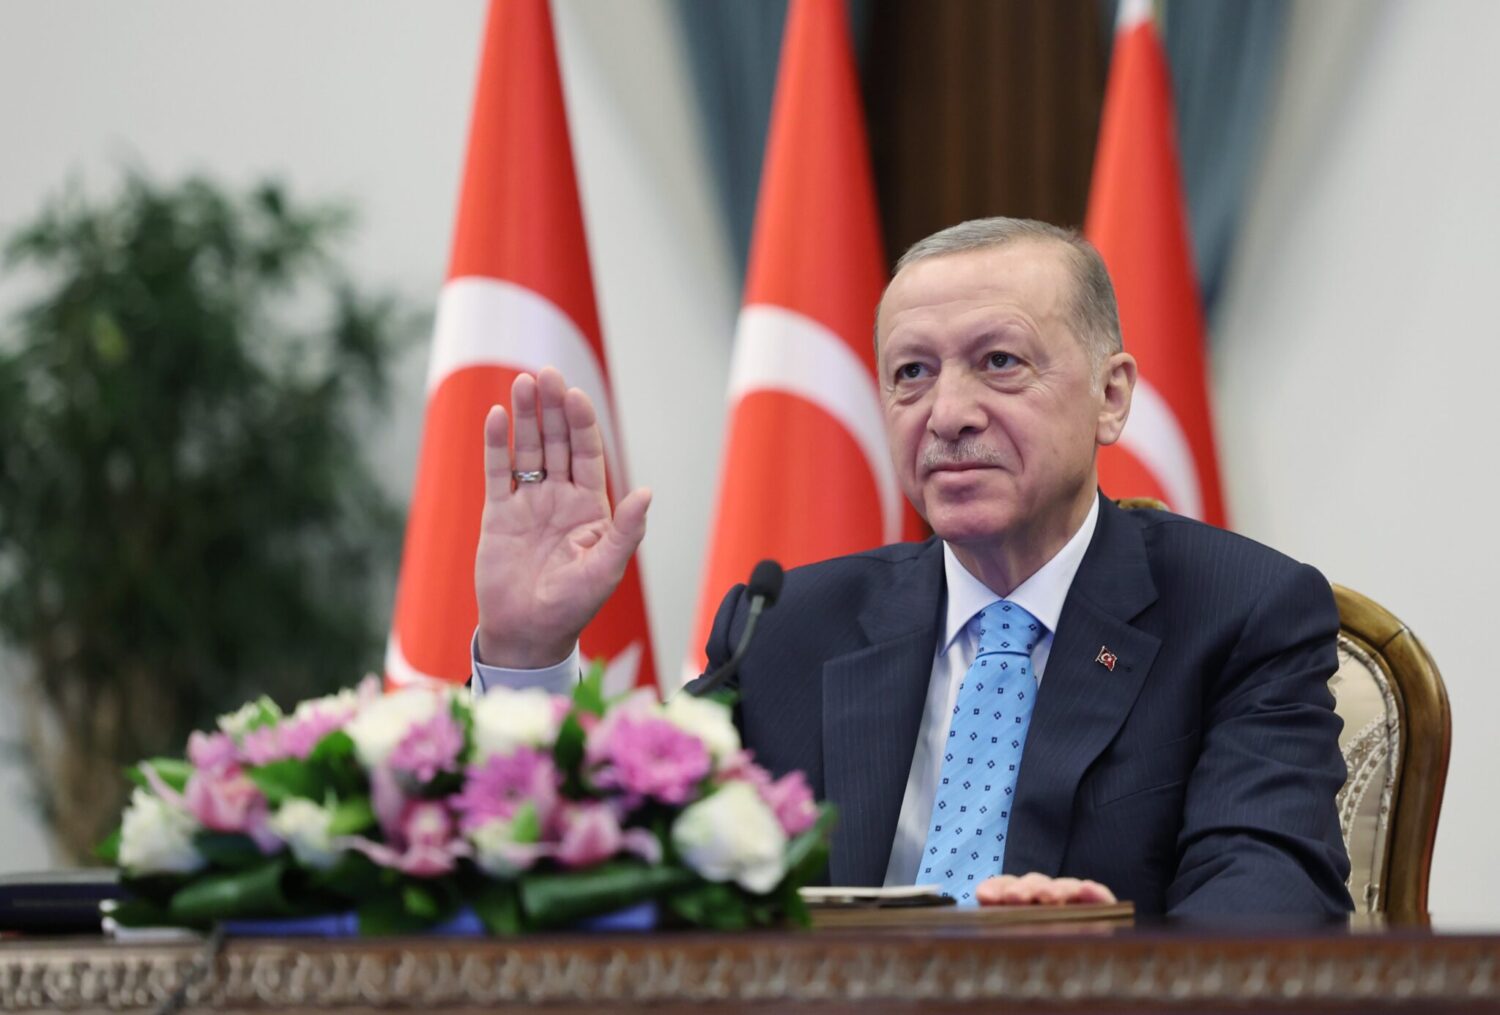 Cumhurbaşkanı Recep Tayyip Erdoğan, Akkuyu Nükleer Güç Santrali ilk nükleer yakıt getirme törenine Beştepe'den video konferans yöntemiyle katılarak açıklamalarda bulundu. 